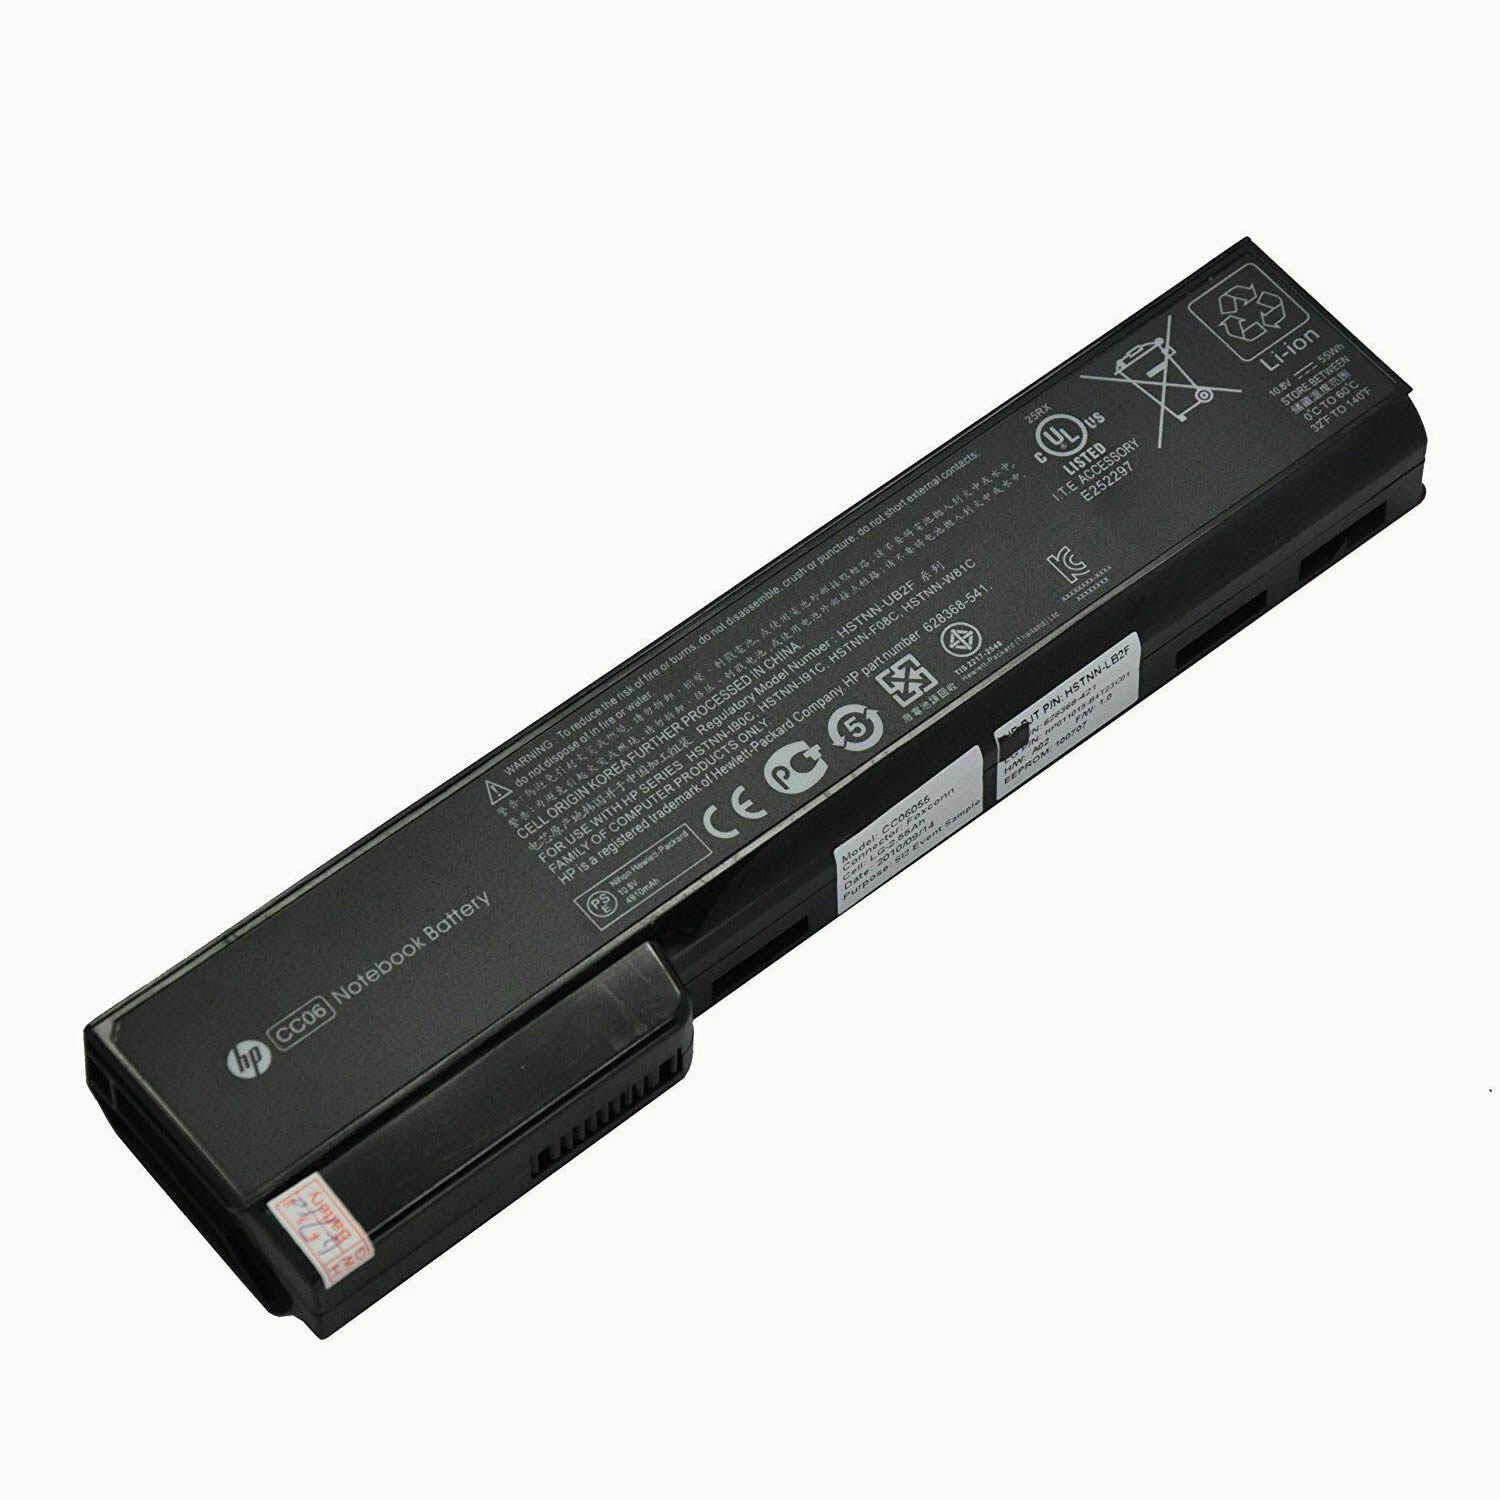 HP CC06 628668-001 628368-351 batterie originale 11.1V ou 10.8V 5000mAh, 55Wh pour ordinateur portable HP ProBook 6460b (A2G07EC), ProBook 6560b (QD143EP) séries